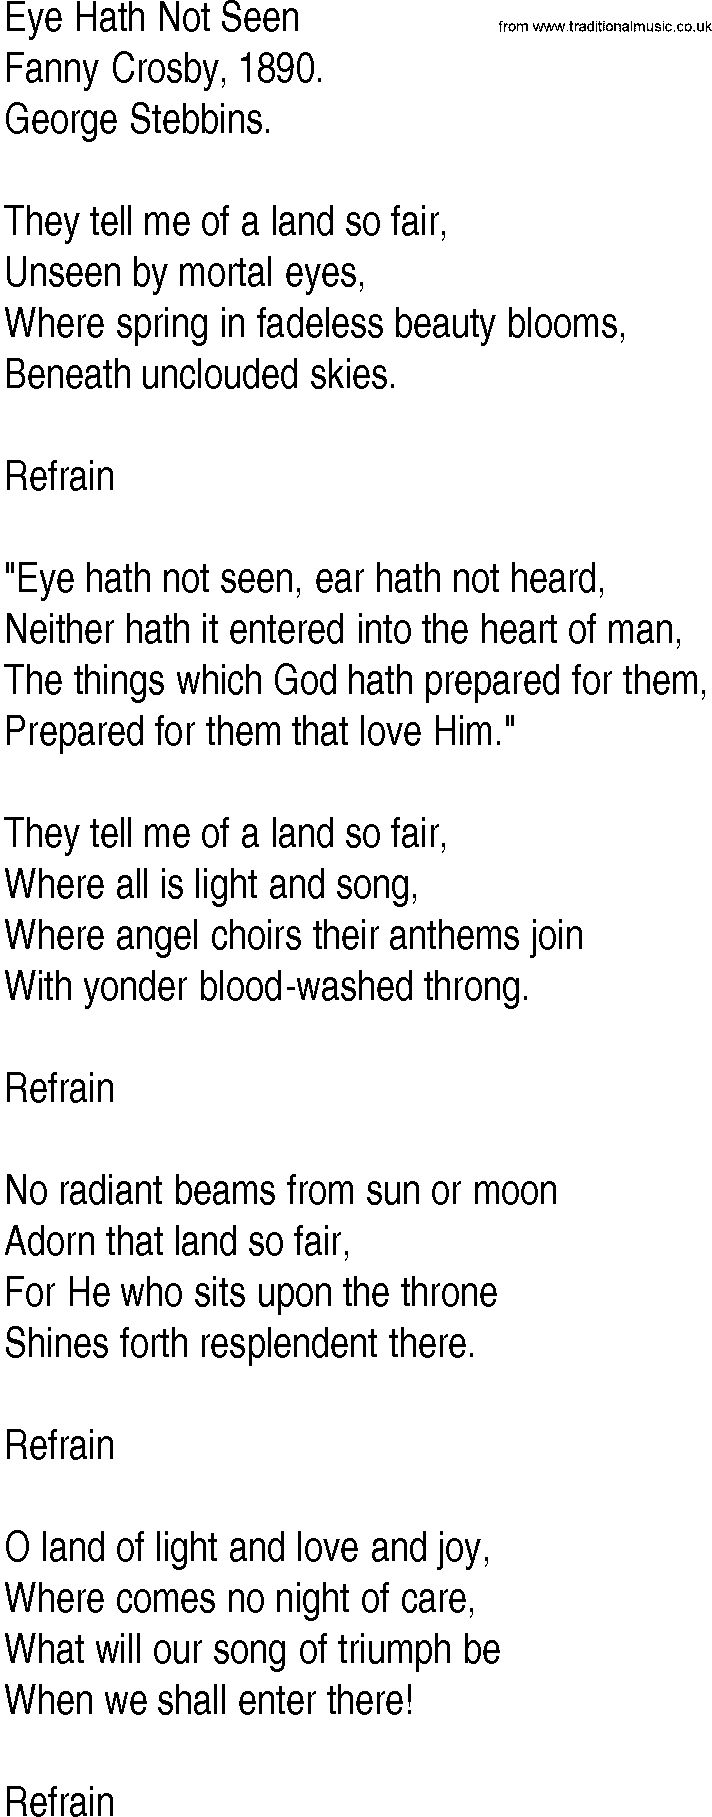 Hymn and Gospel Song: Eye Hath Not Seen by Fanny Crosby lyrics